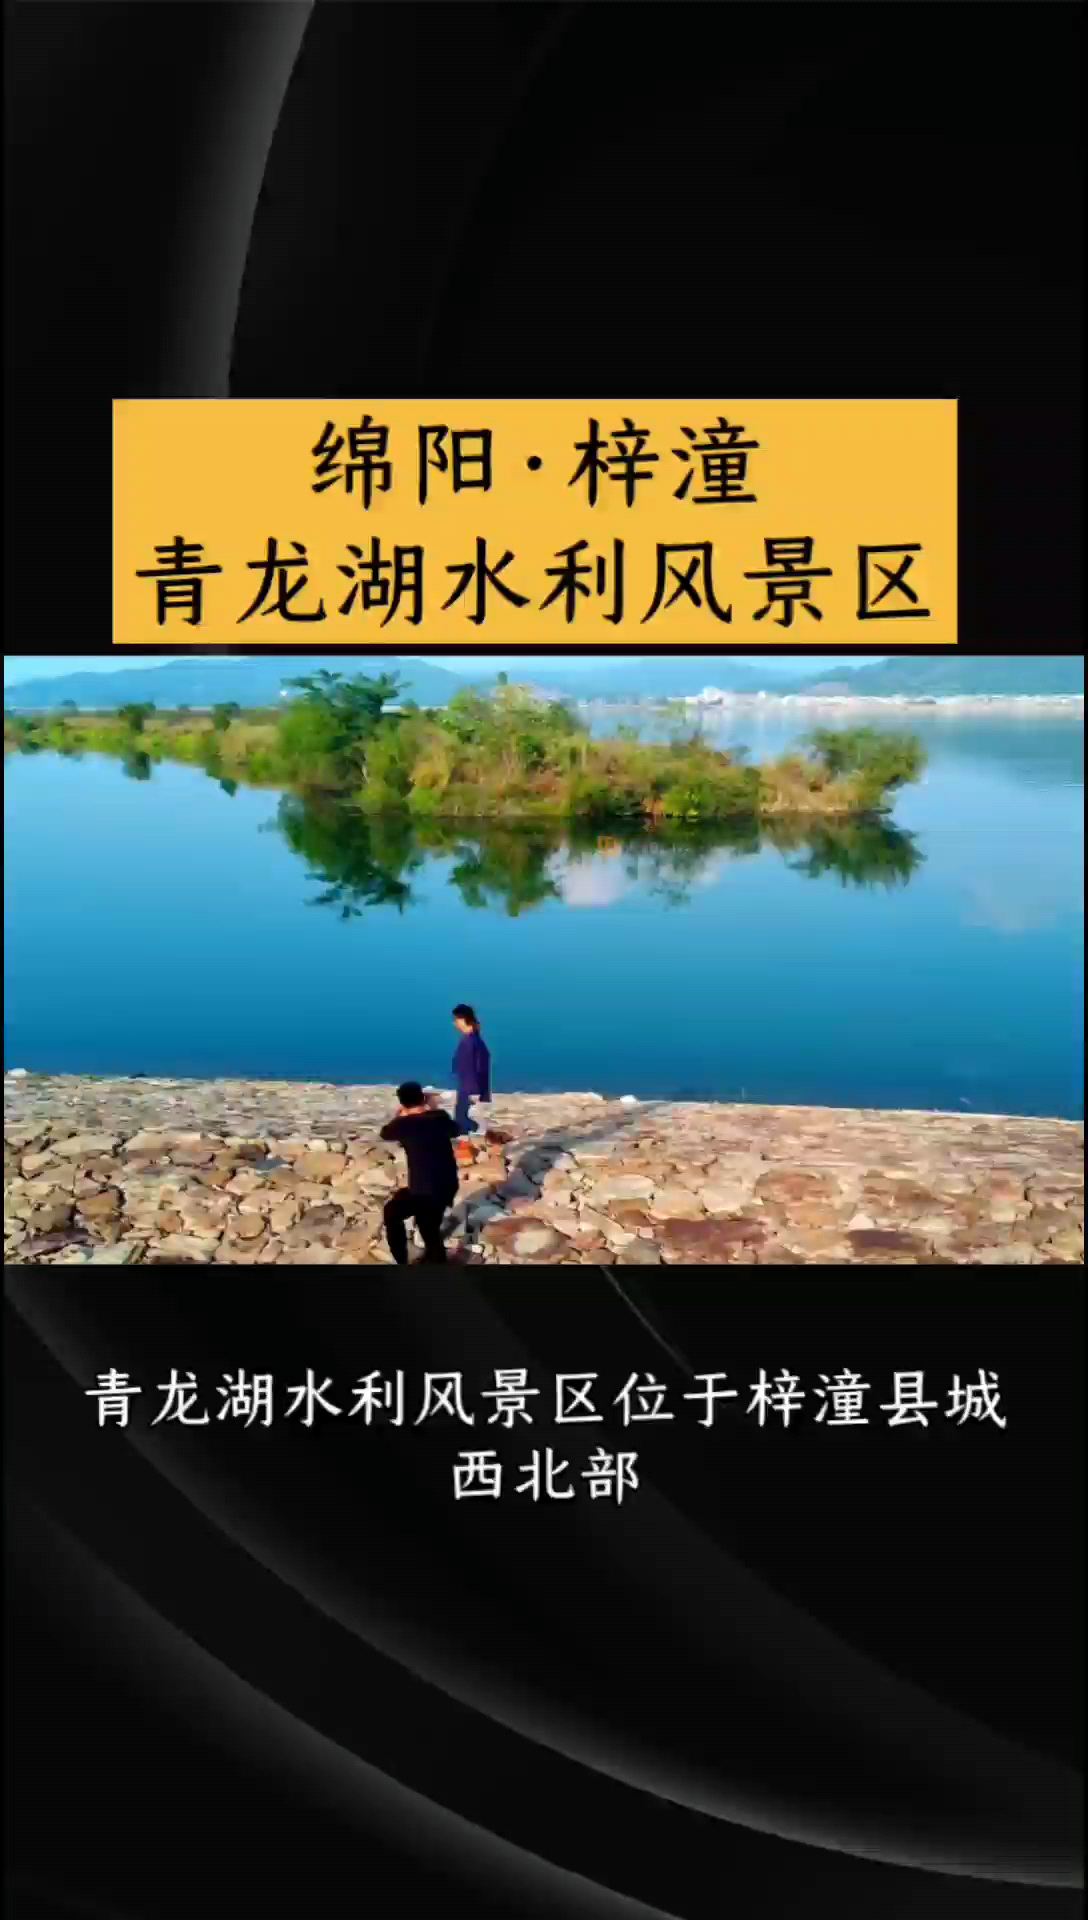 梓潼青龙湖水利风景区:自然与人文的融合